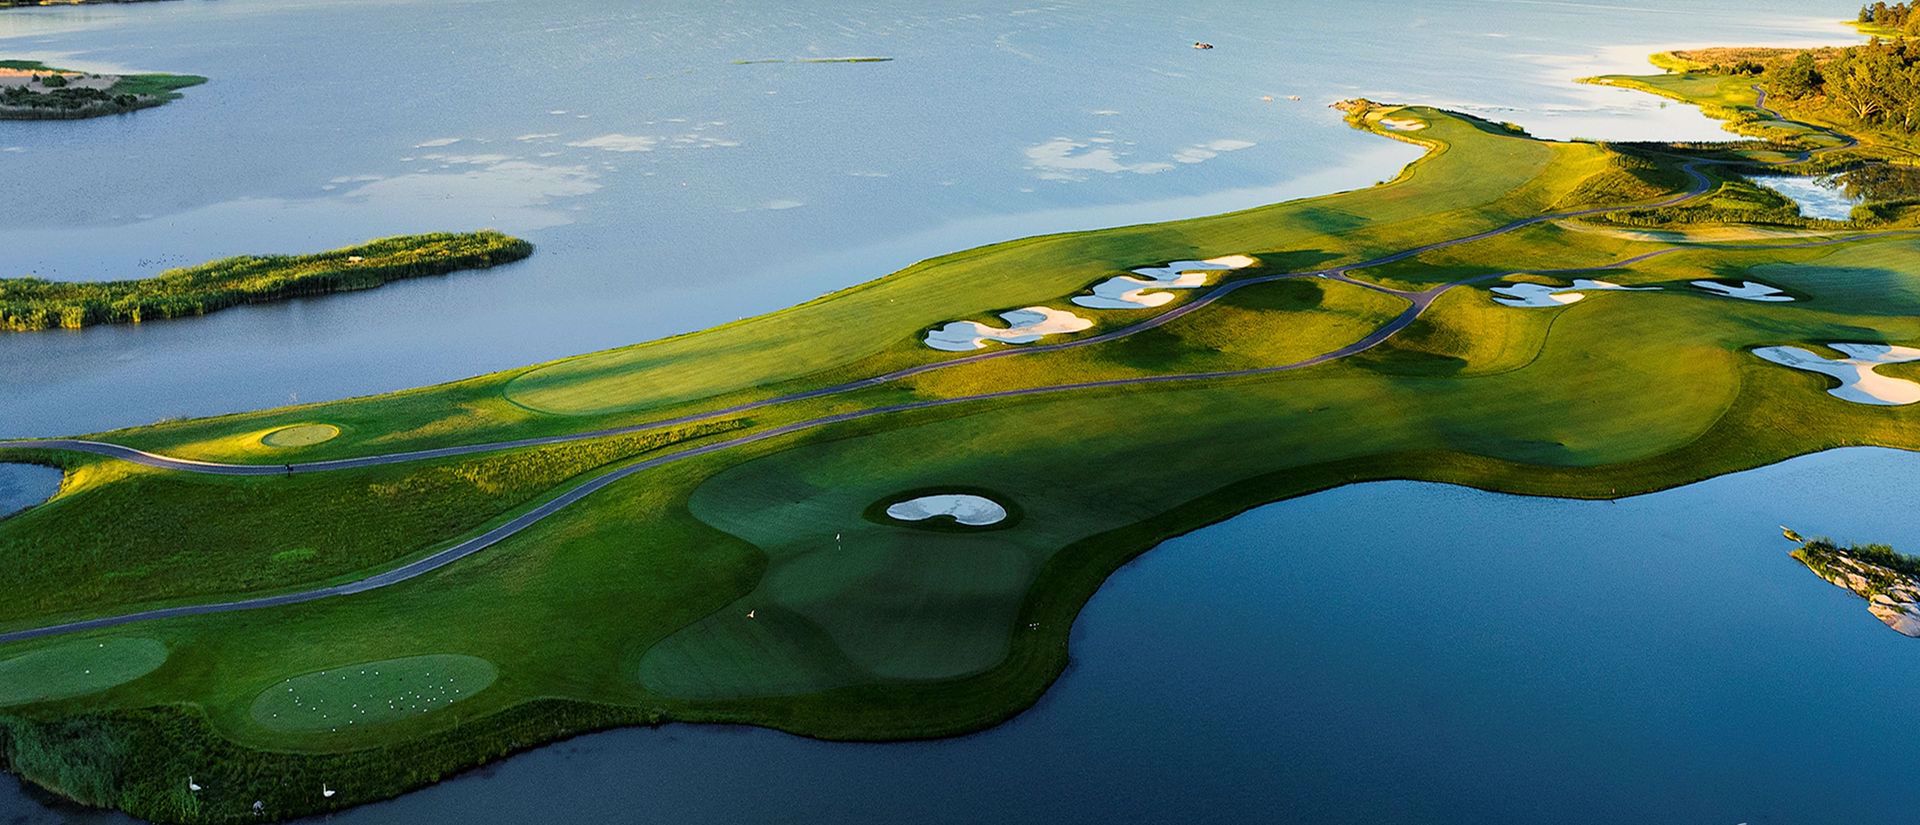 Numéro 1 en Suède - Bro Hof Golf Course